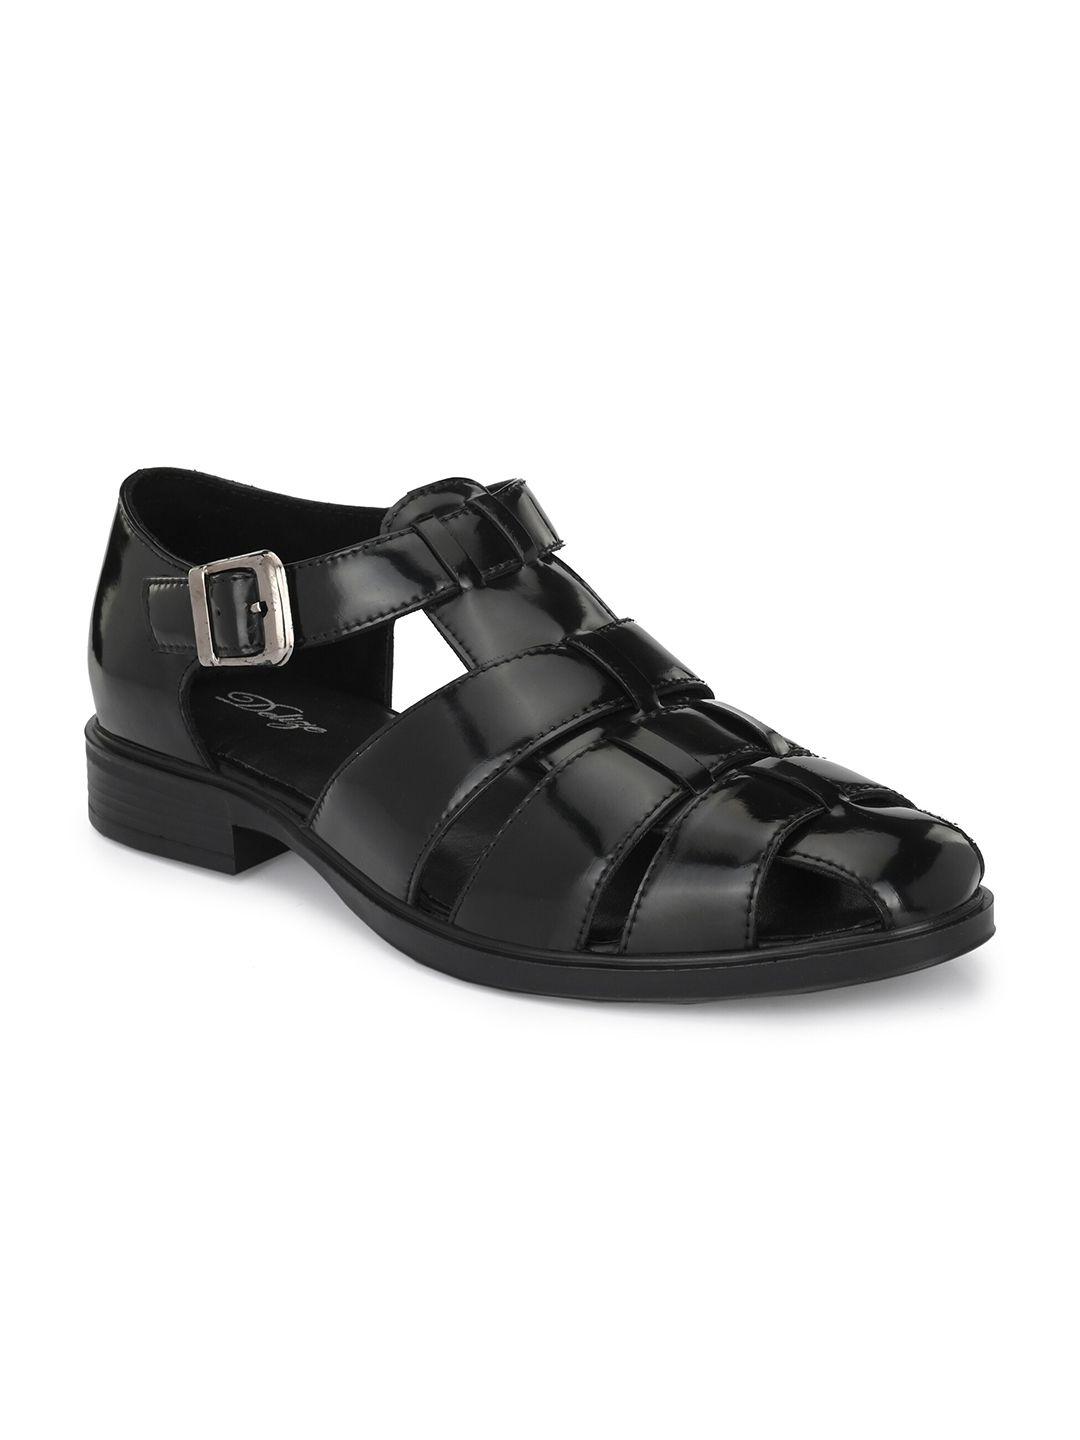 delize-men-black-shoe-style-sandals